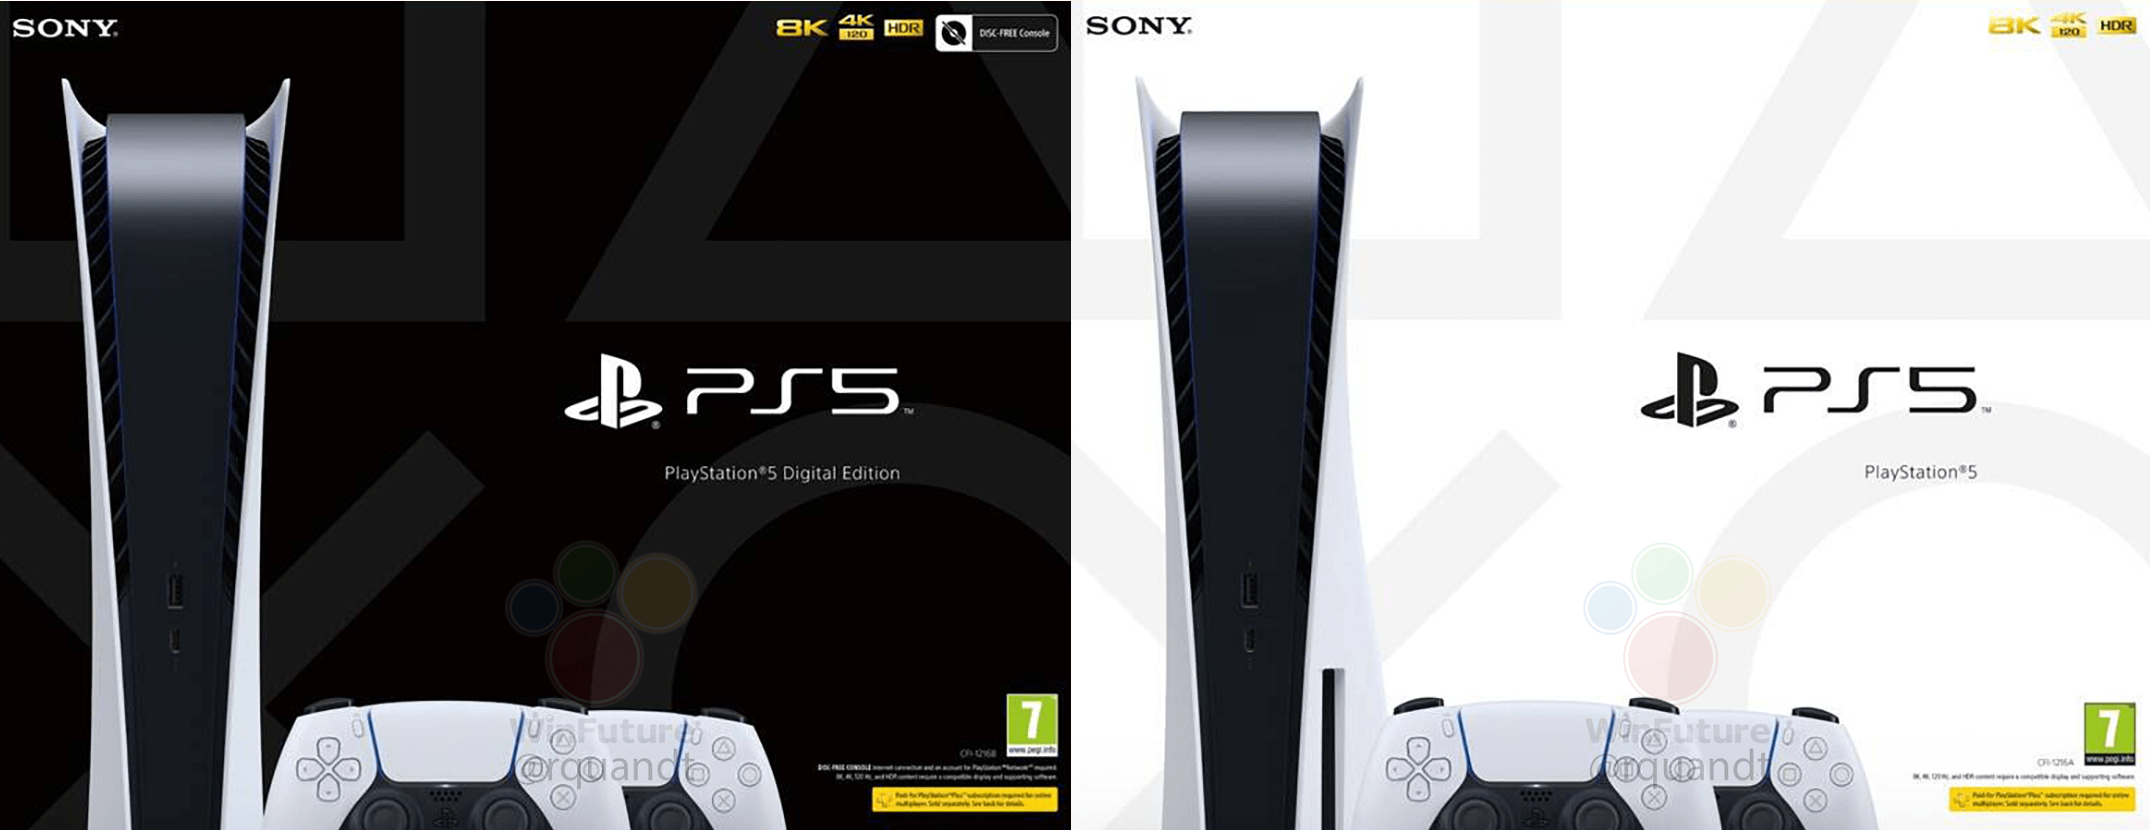 Por fin: Sony empezará a vender la PlayStation 5 con dos mandos DualSense